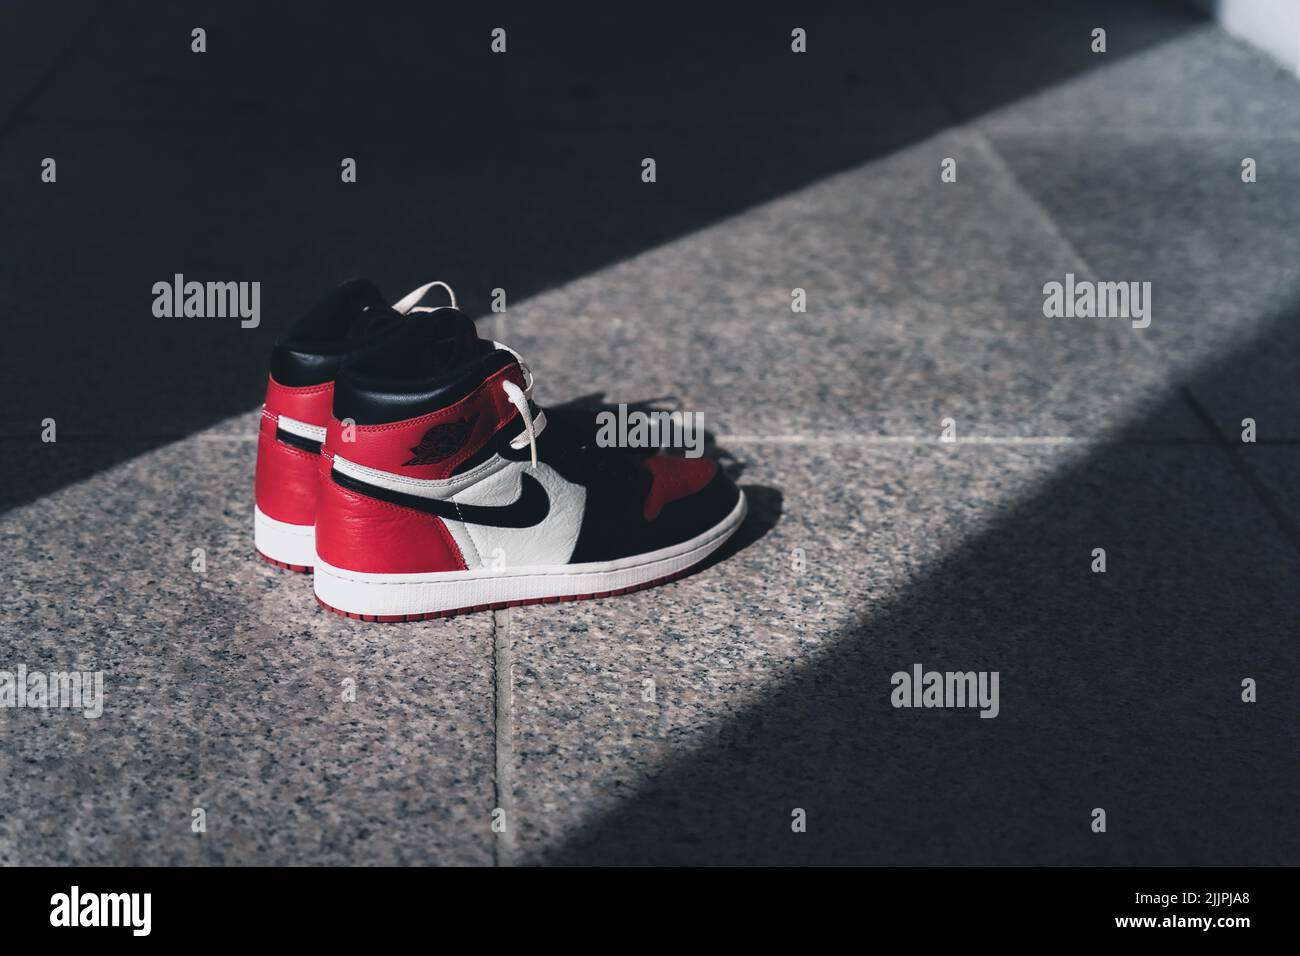 Zapatillas rojas negras fotografías imágenes alta - Alamy